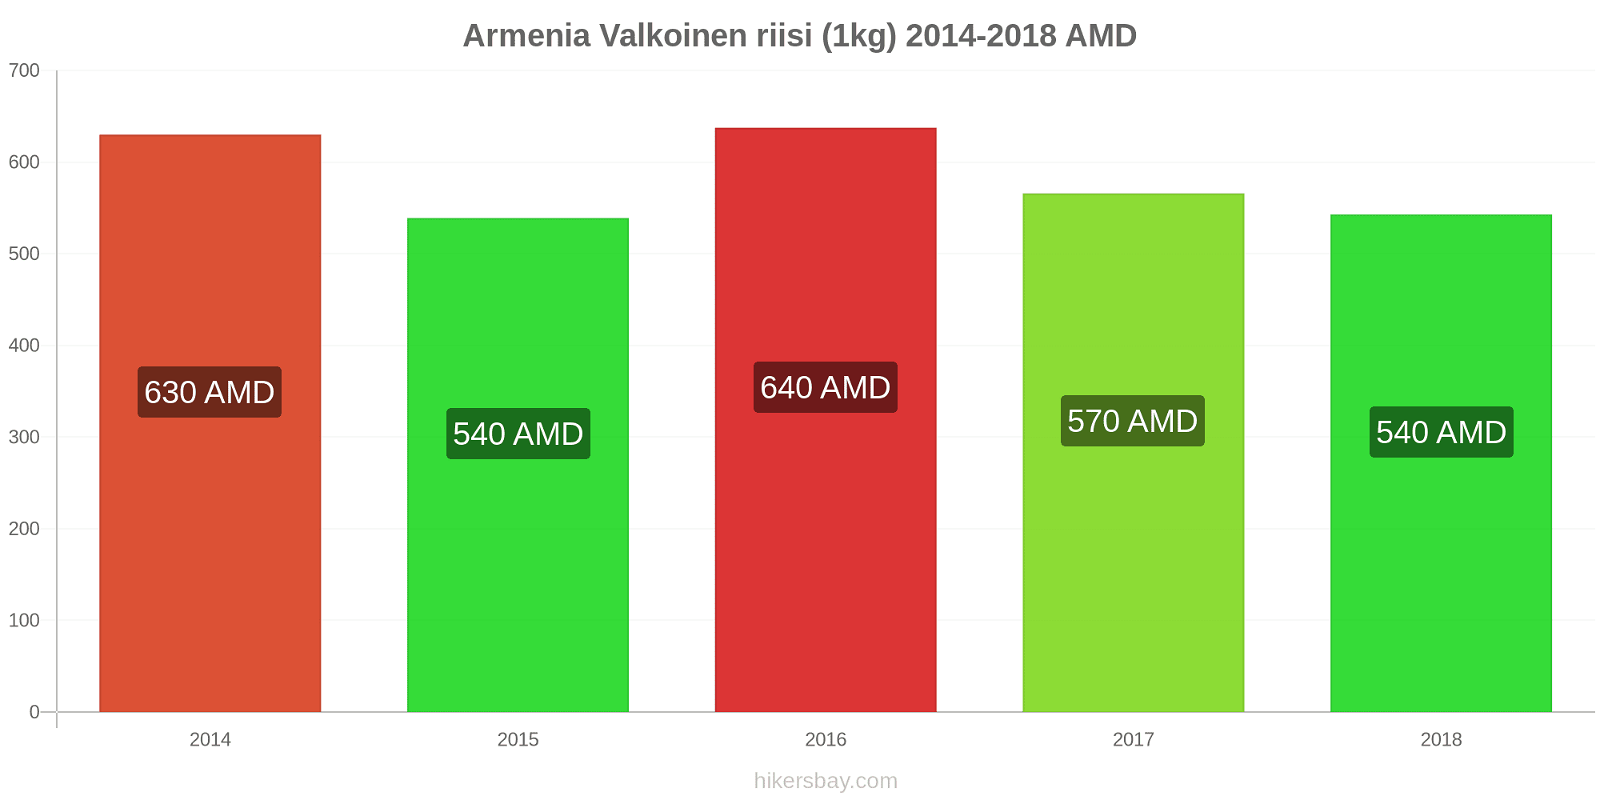 Armenia hintojen muutokset Valkoinen riisi (1kg) hikersbay.com